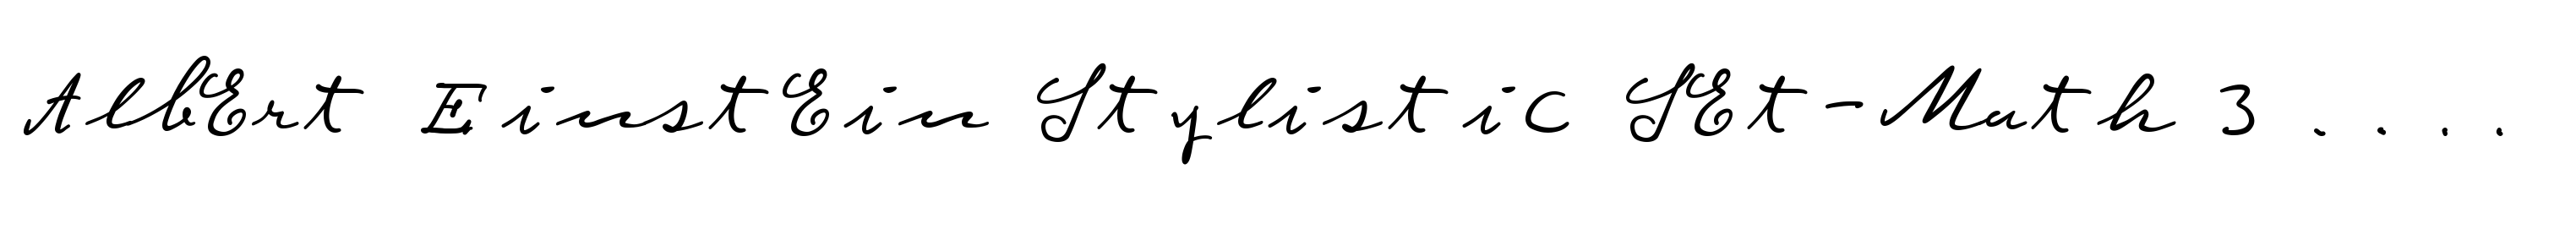 Albert Einstein Stylistic Set-Math 30 Fine